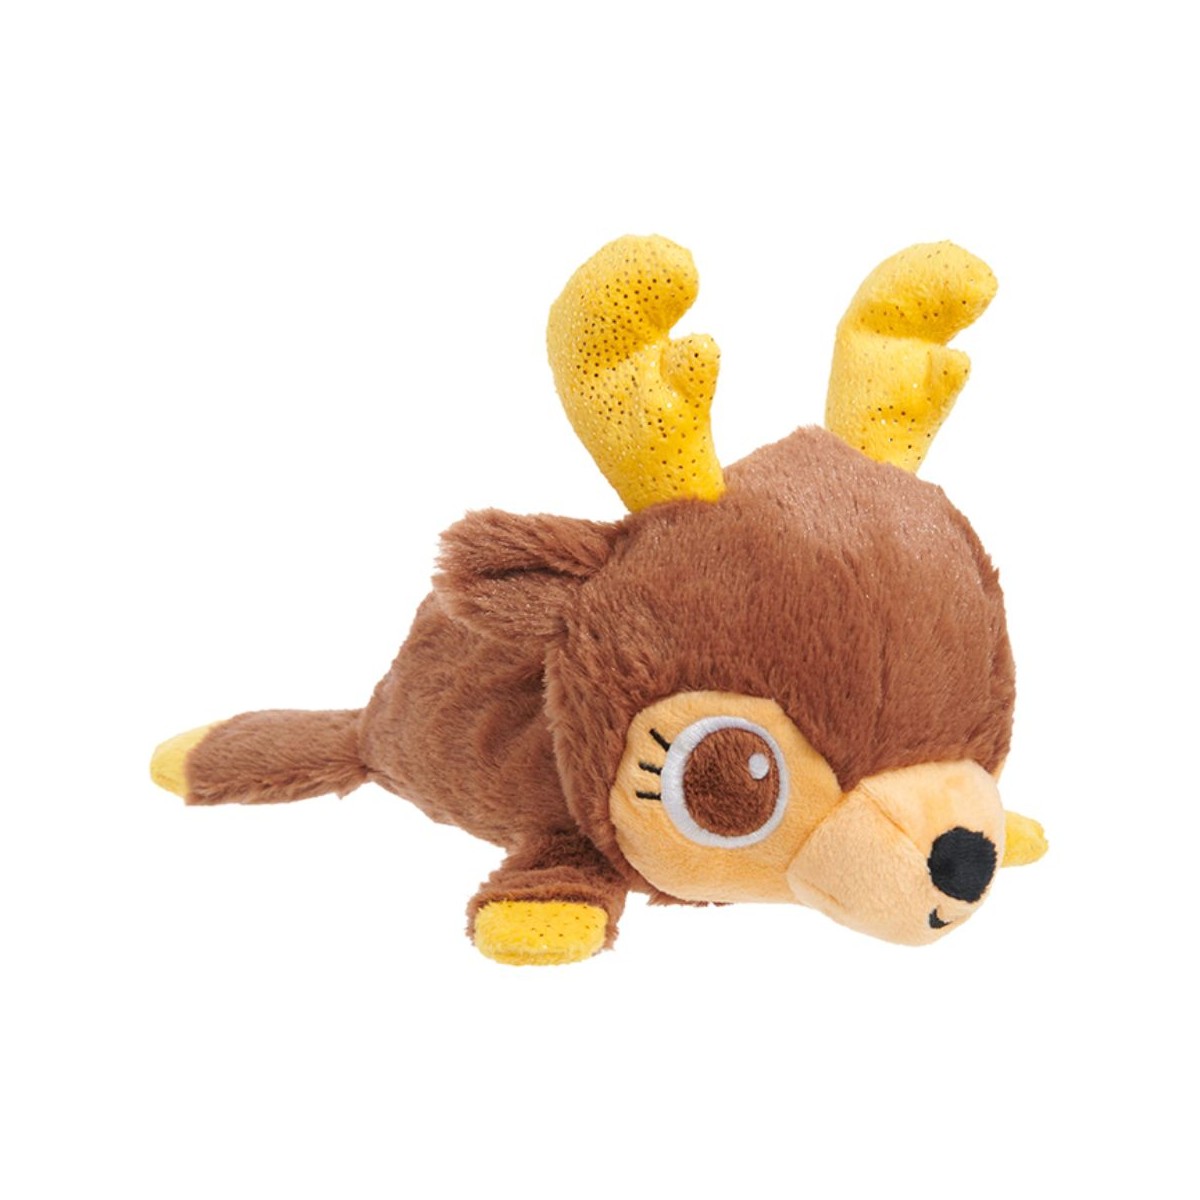 BARK Holiday Plush Dog Toy - Splootdolph 